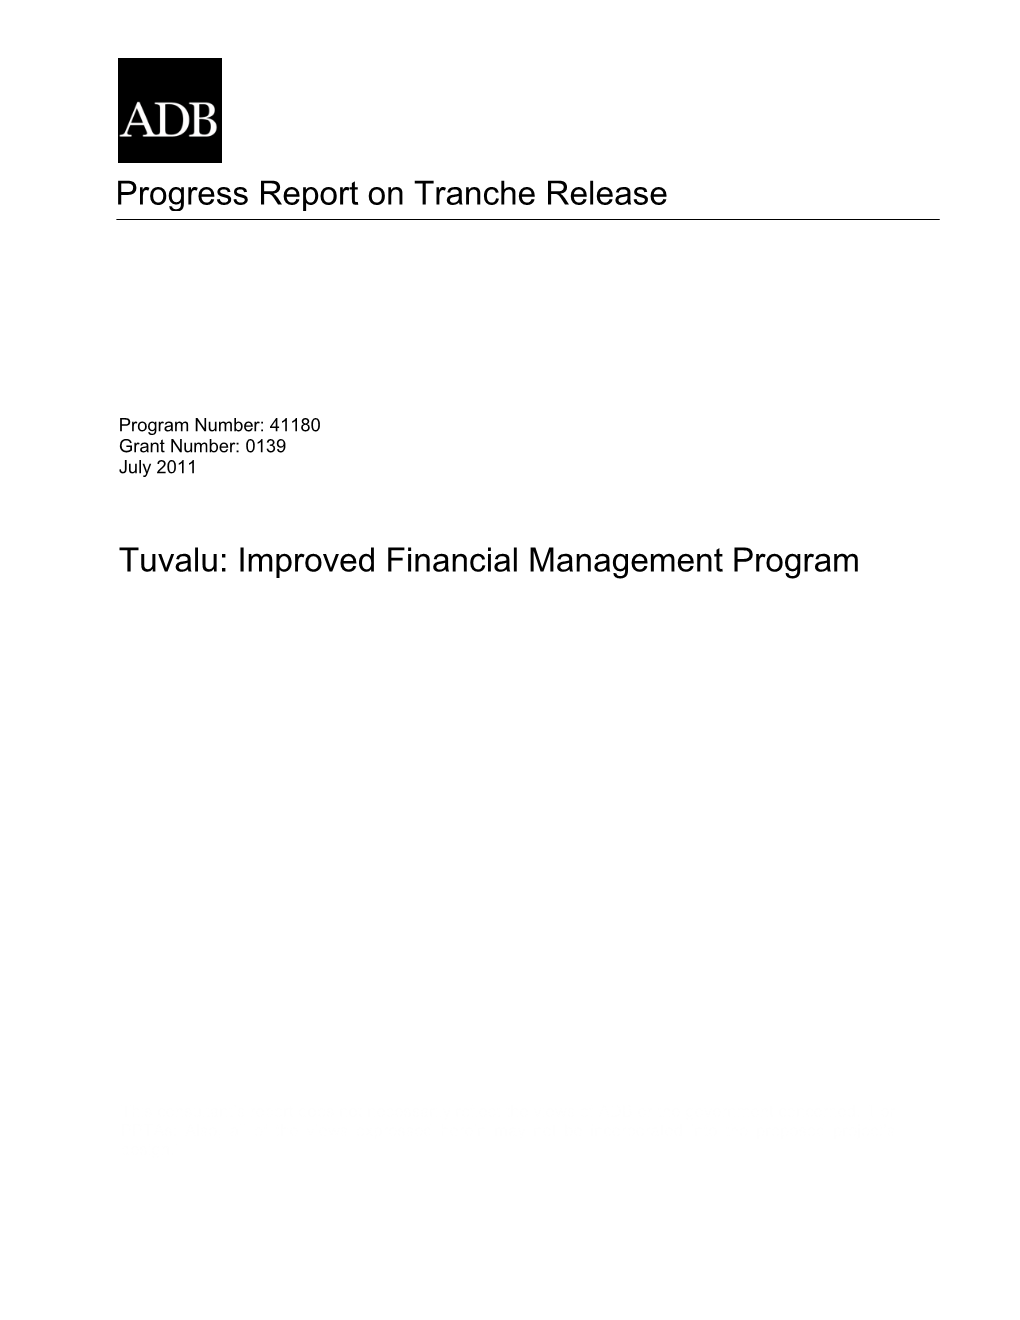 Tuvalu: Improved Financial Management Program